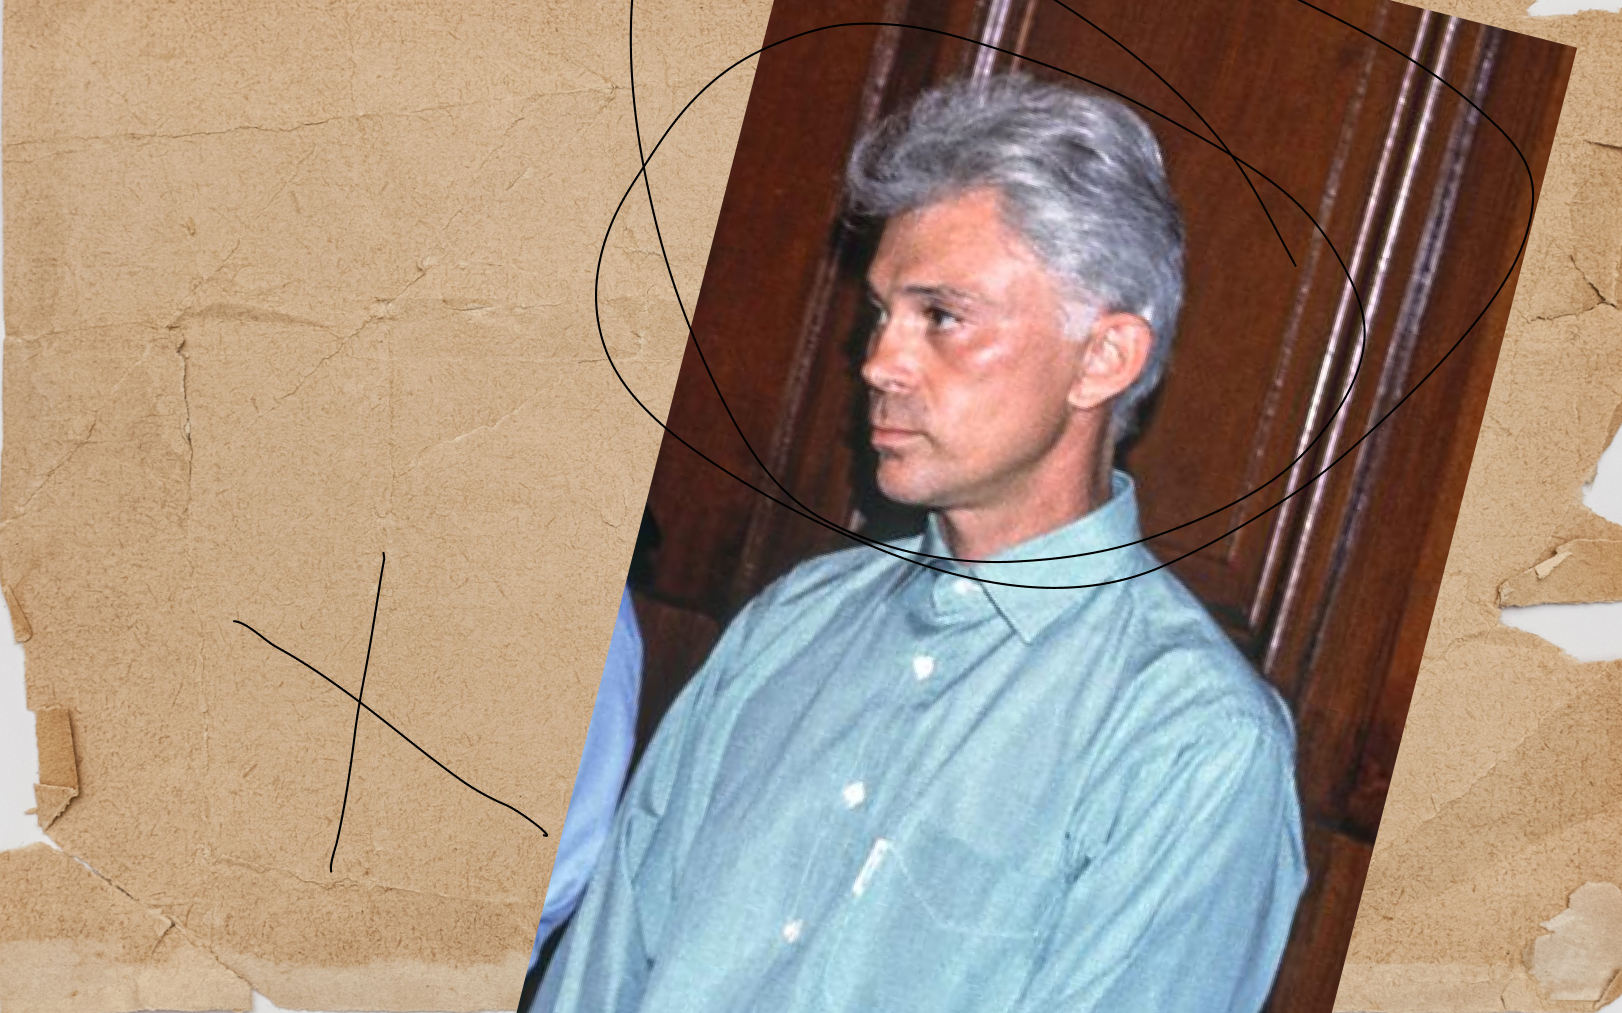 Le 16 octobre 1992, Yves Dandonneau, devant la cour d’assises de Montpellier (Hérault), attend le verdict de son procès. MaxPPP/Midi Libre